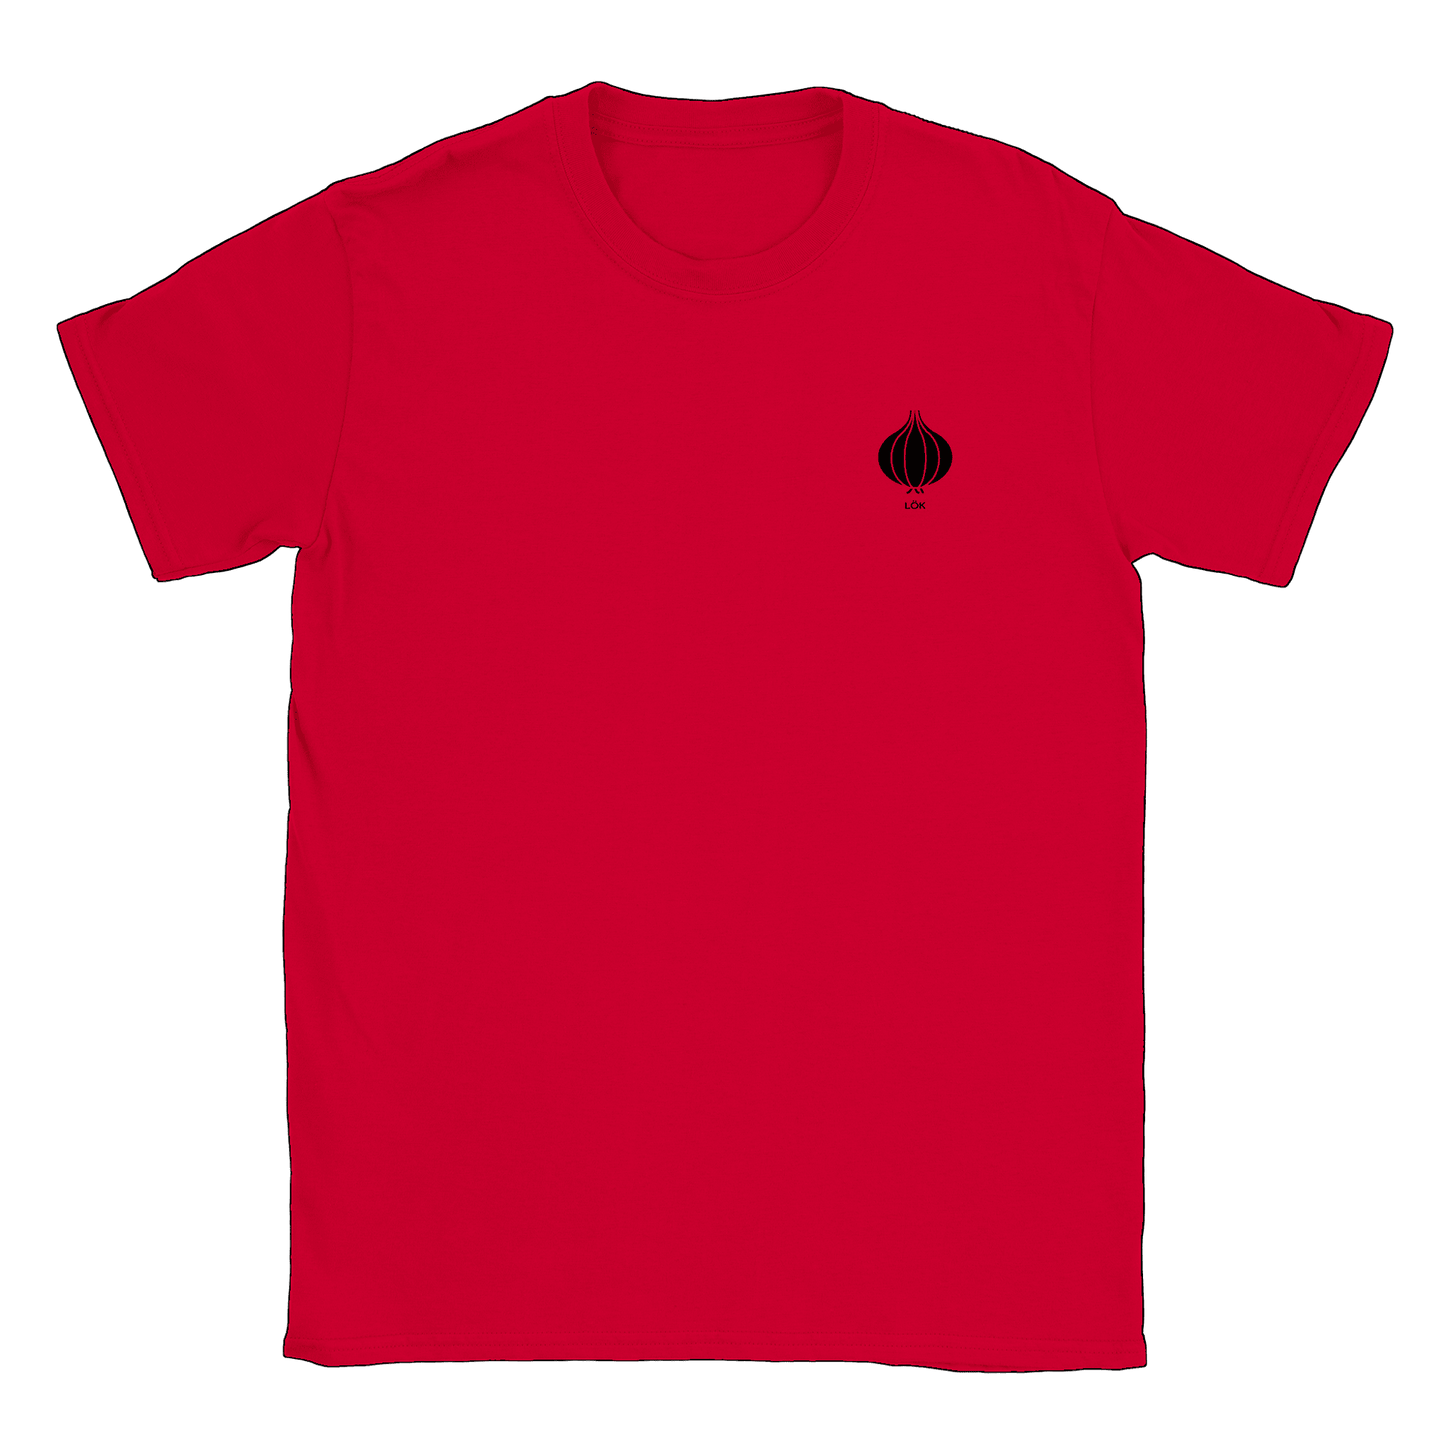 Lök liten - T-shirt Röd